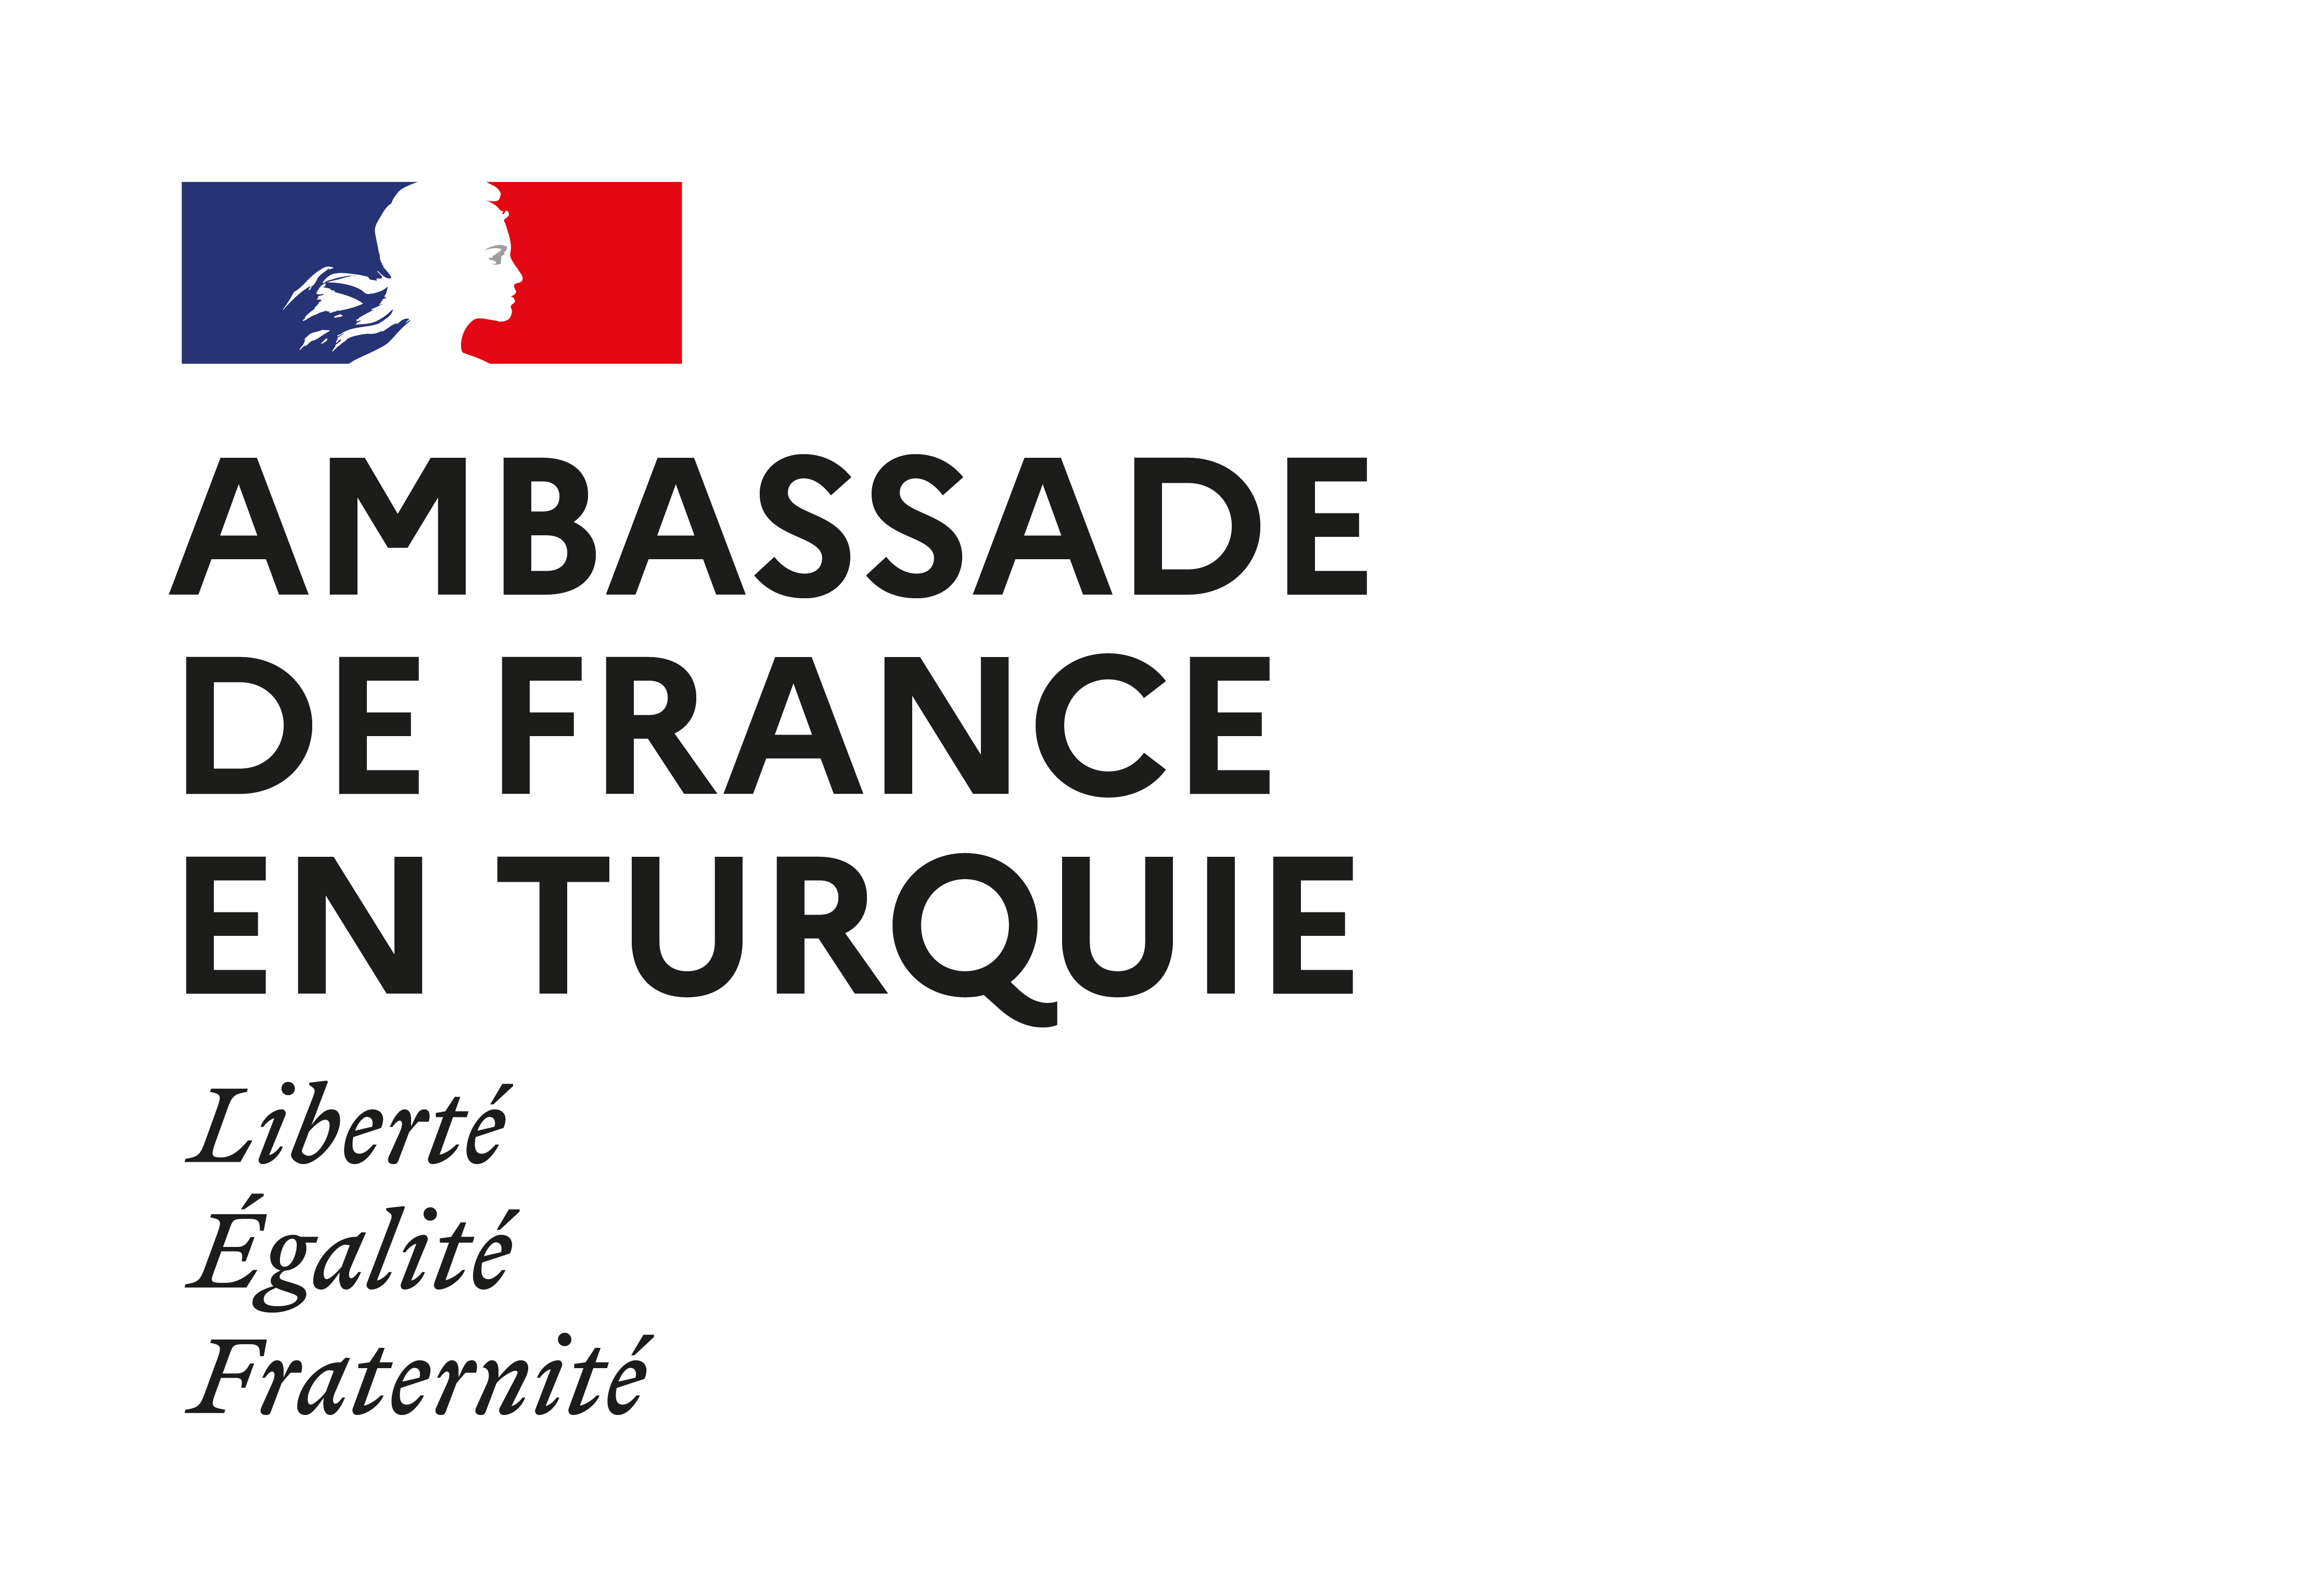 Fransa Büyükelçiliği 2022 çevre proje çağrısı sonuçlandı